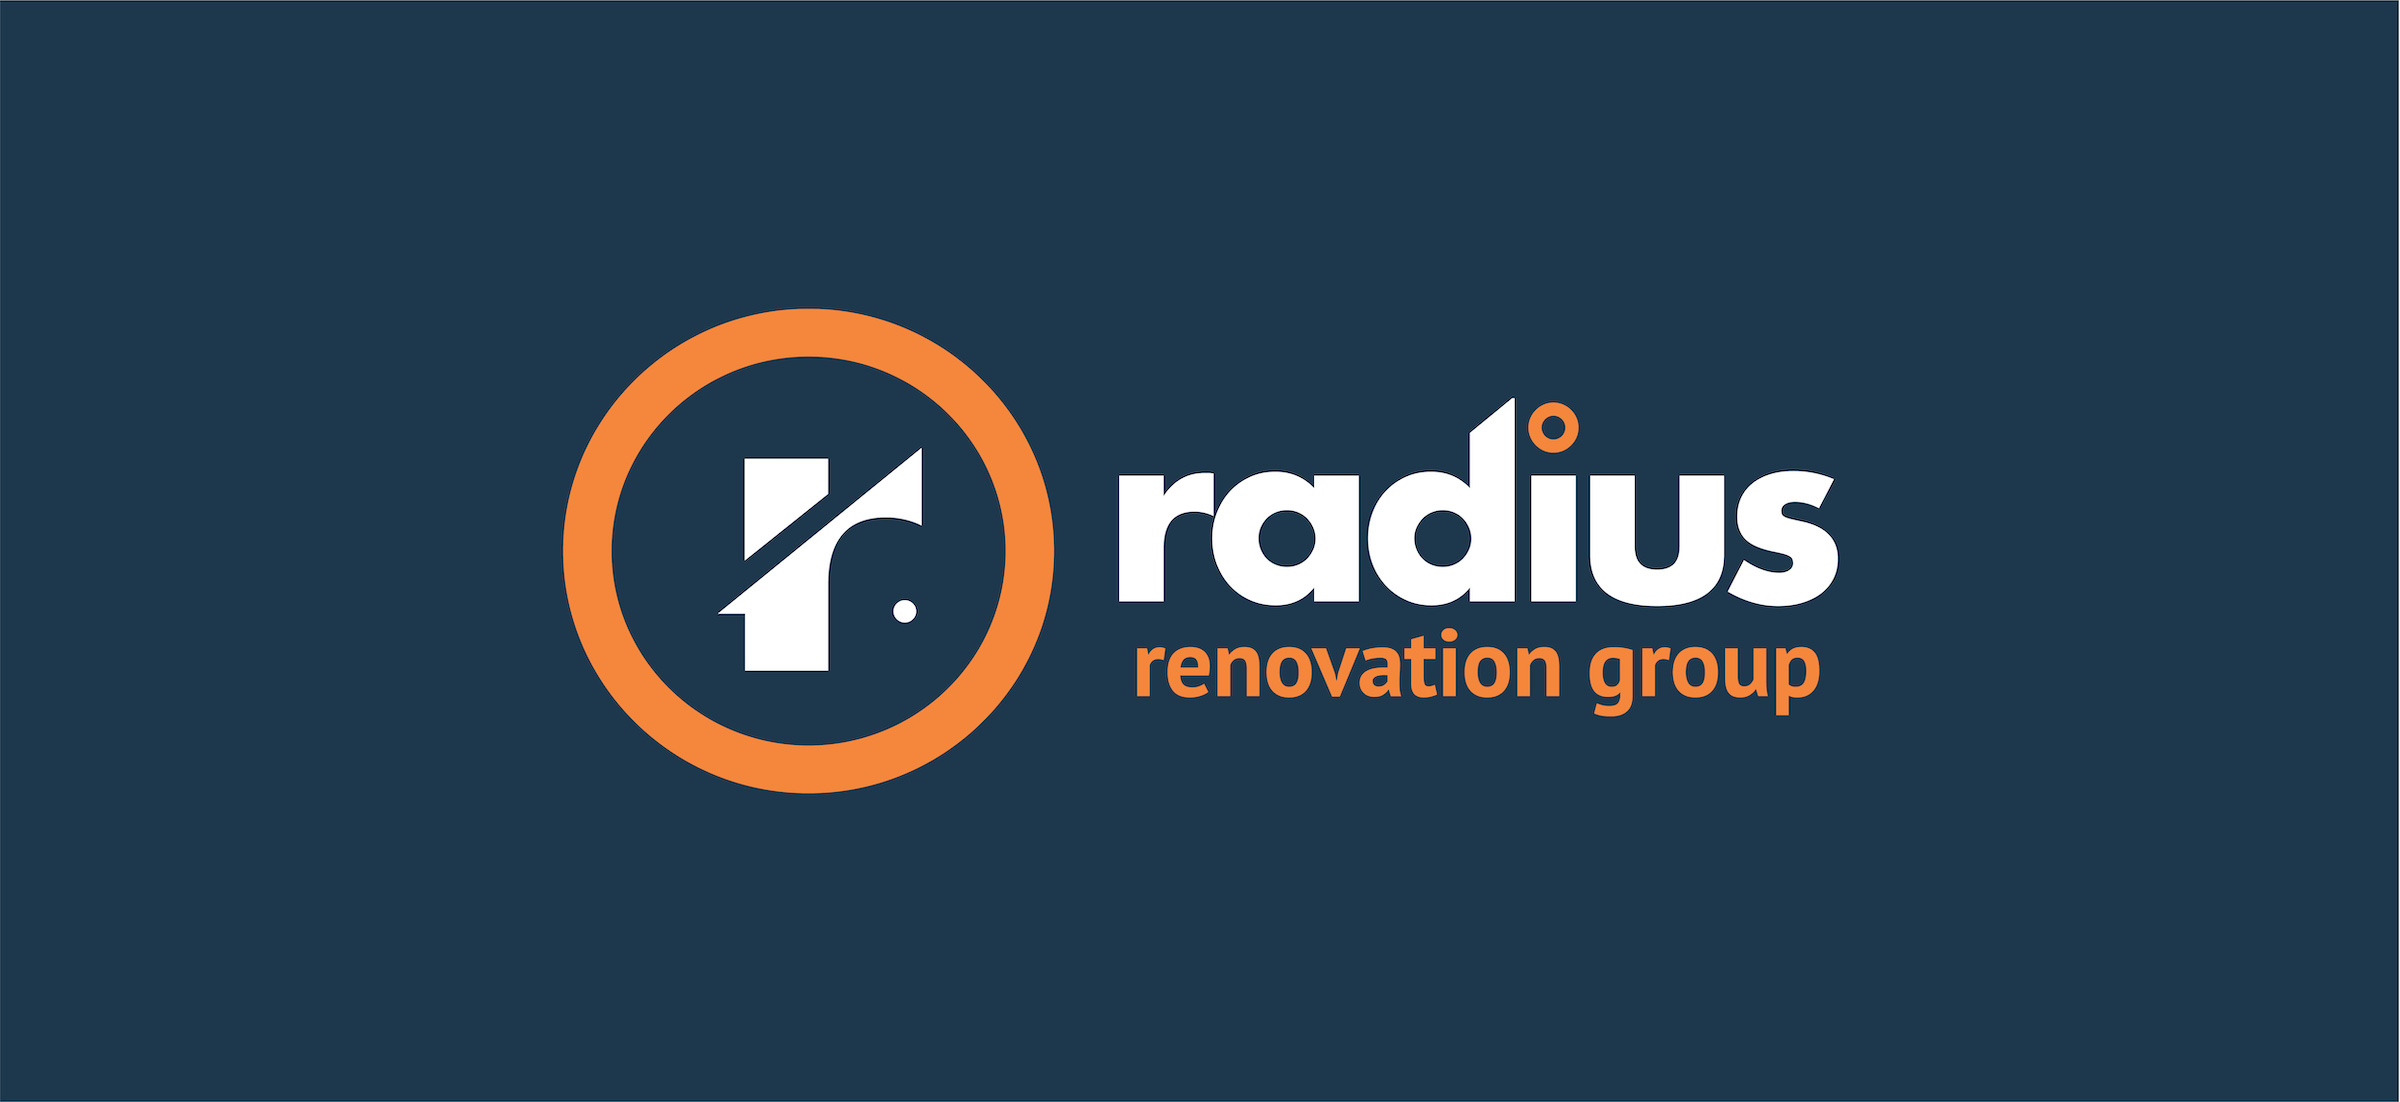 radius renovation group print